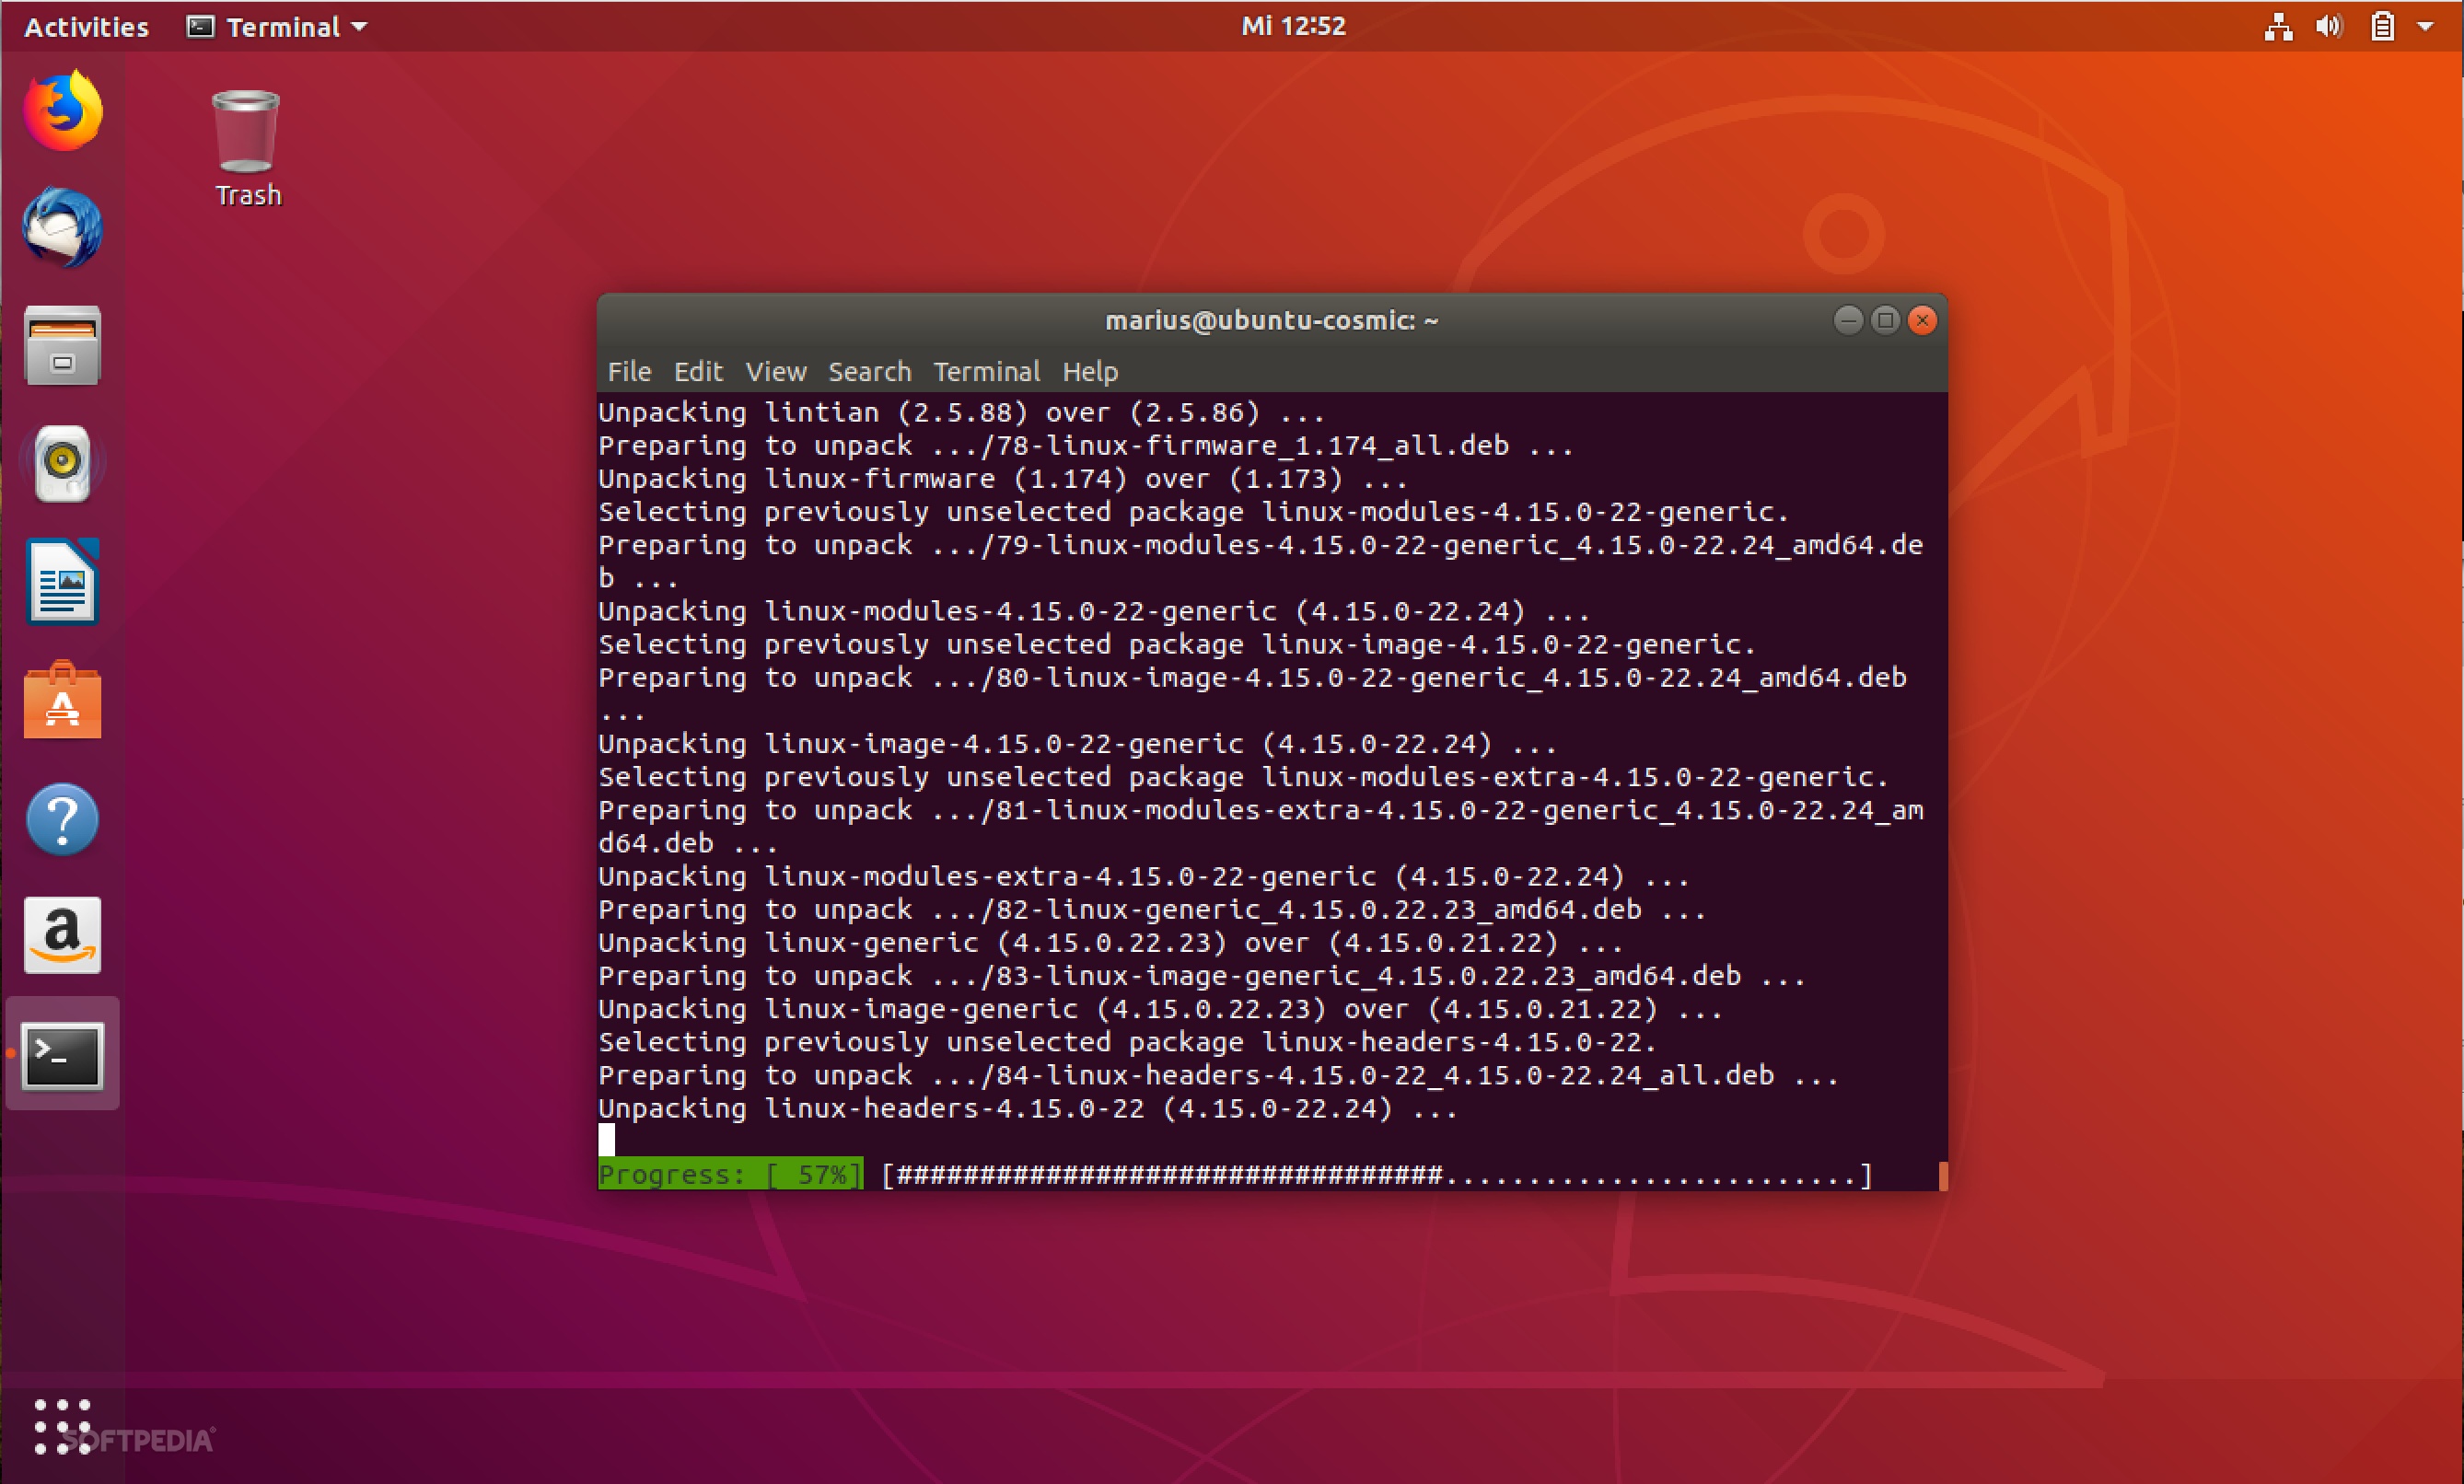 meld diff viewer ubuntu 18.04